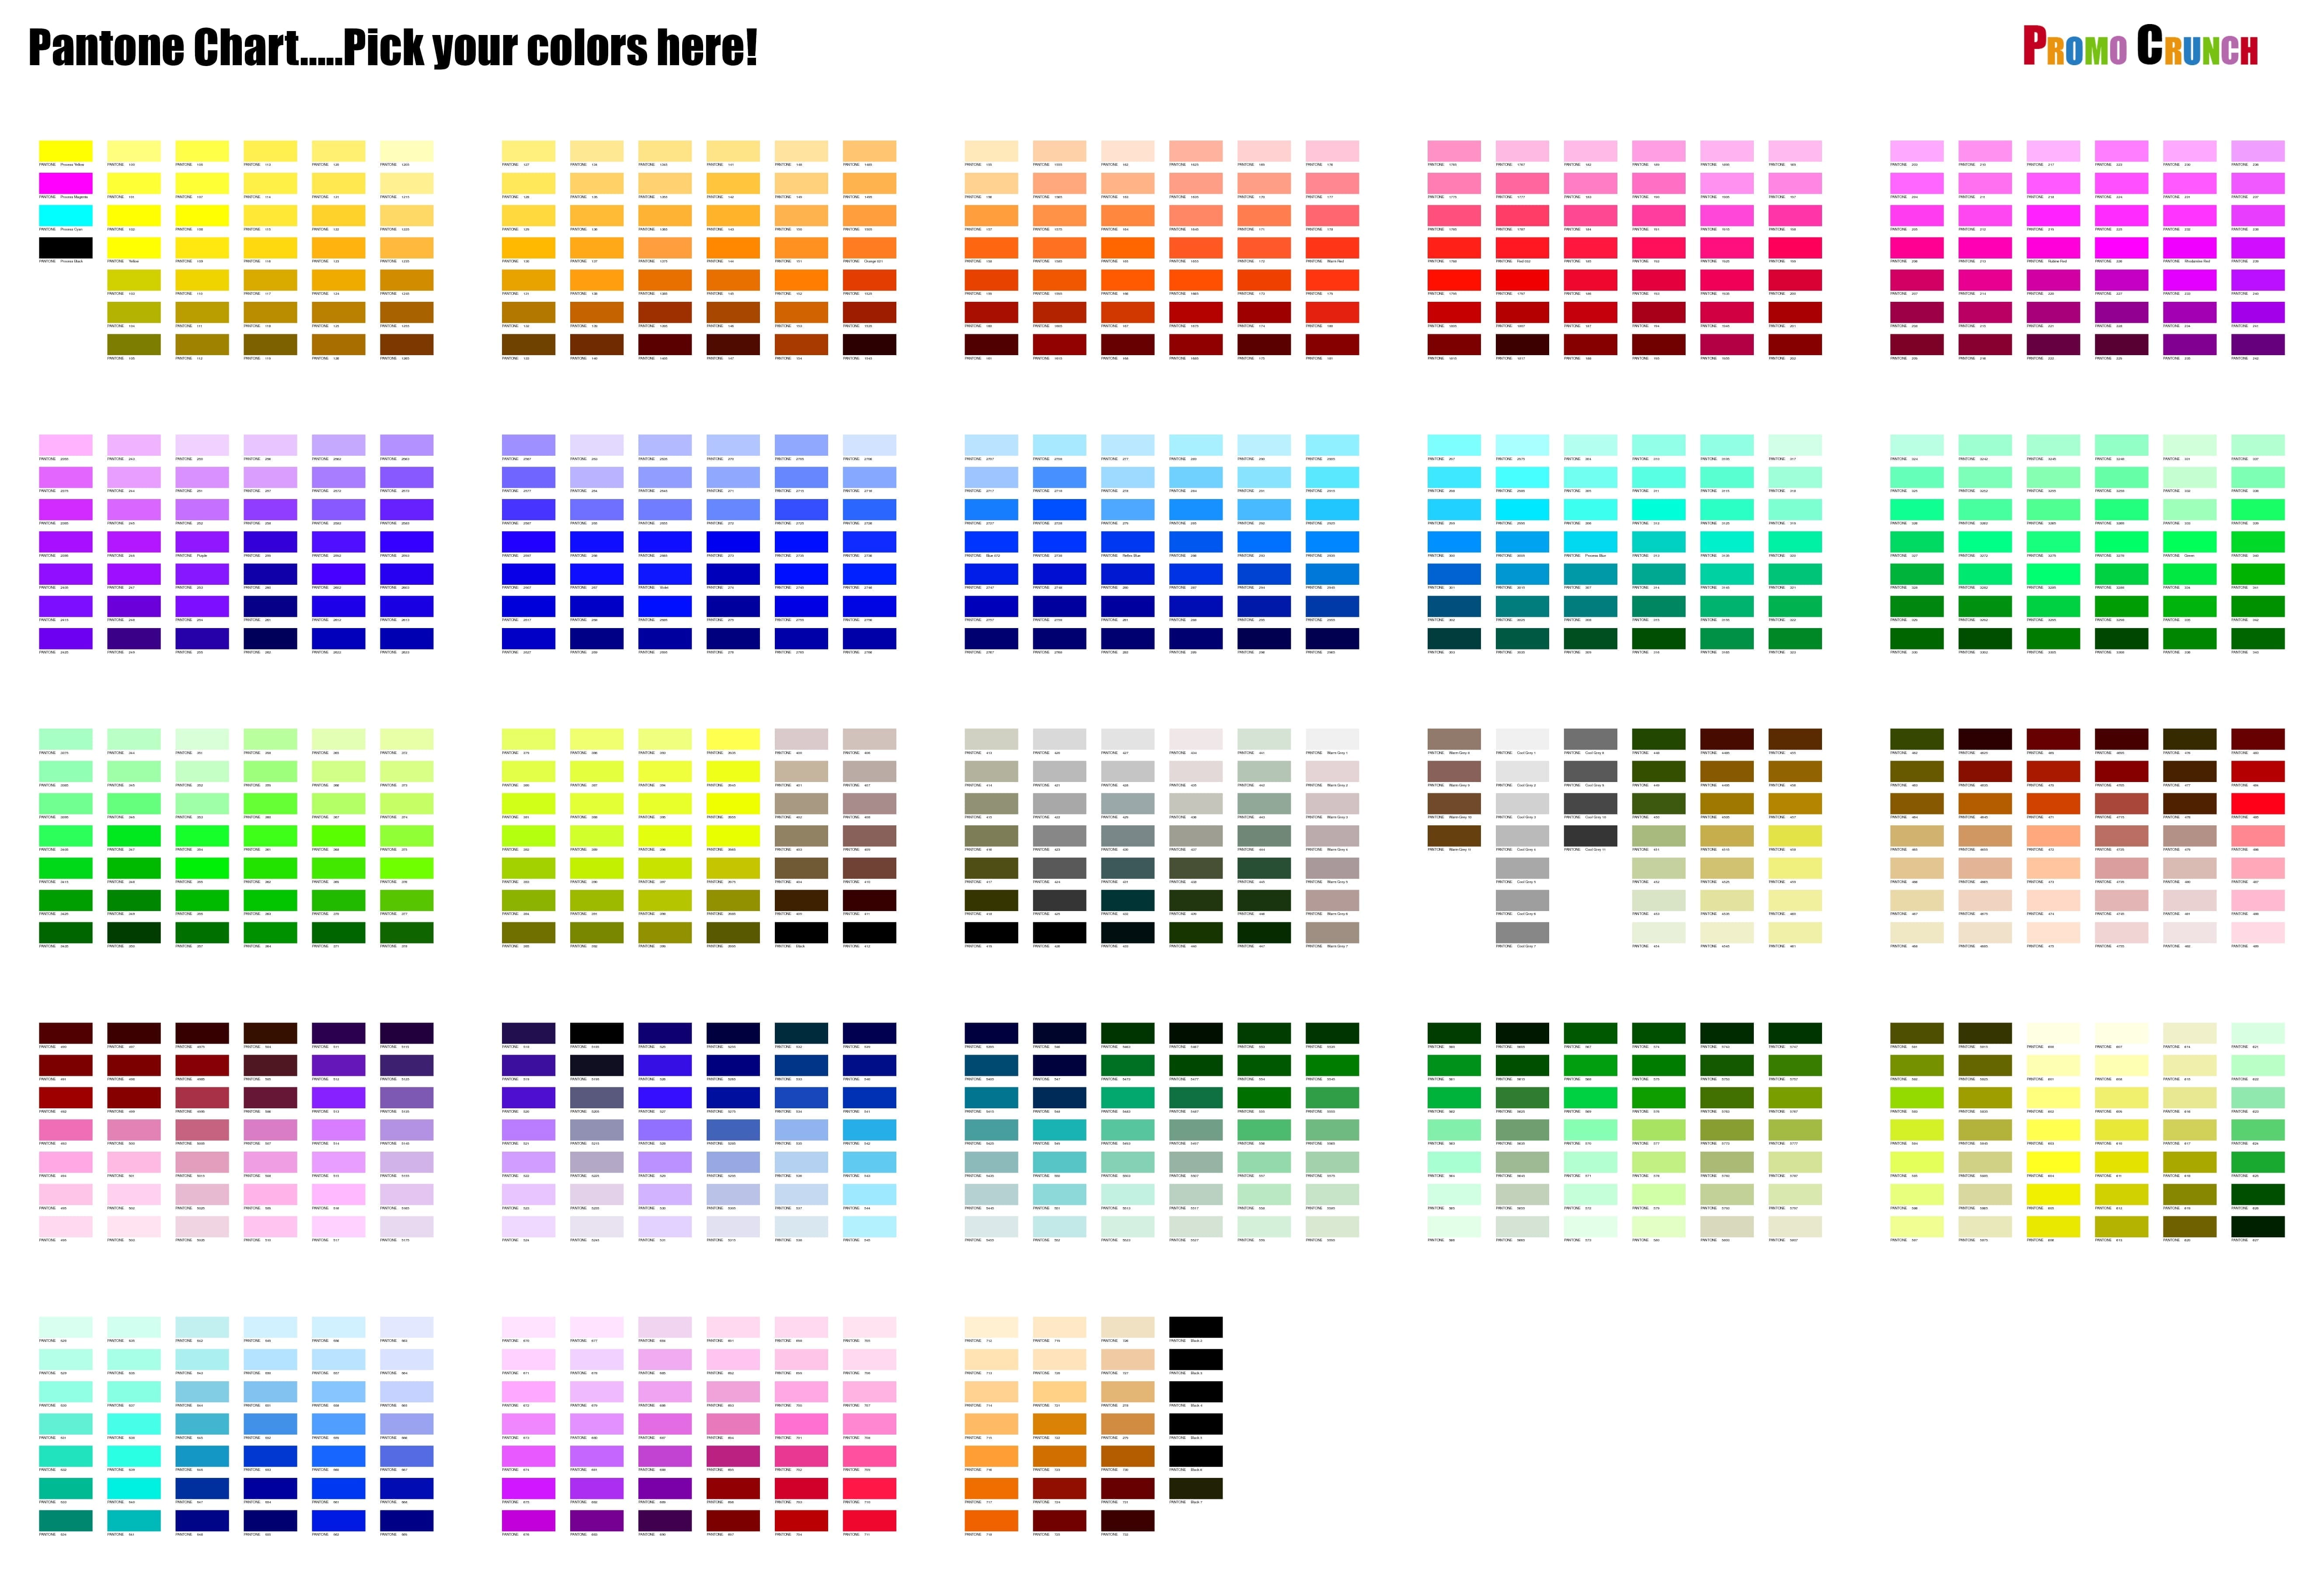 pms-color-chart-pms-colour-colour-list-color-charts-pantone-color-guide-pantone-color-chart